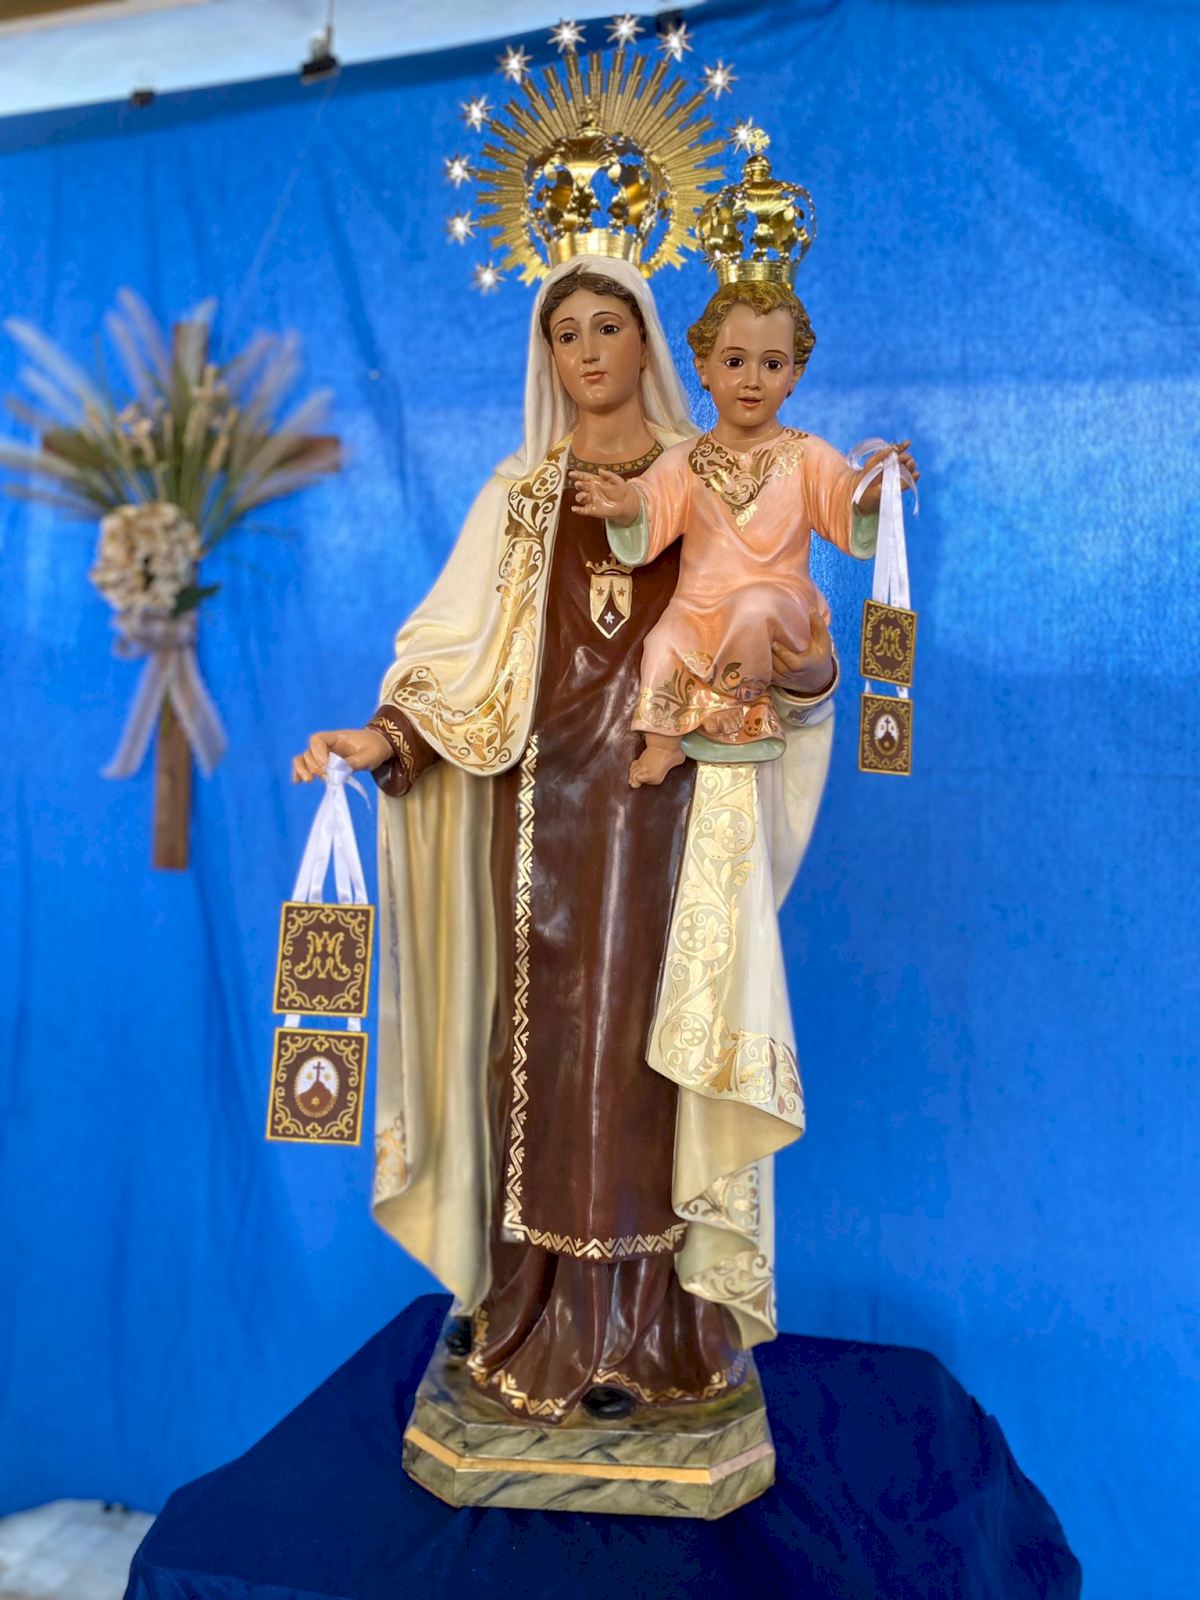 Las fiestas de la Virgen del Carmen estrenan imagen restaurada